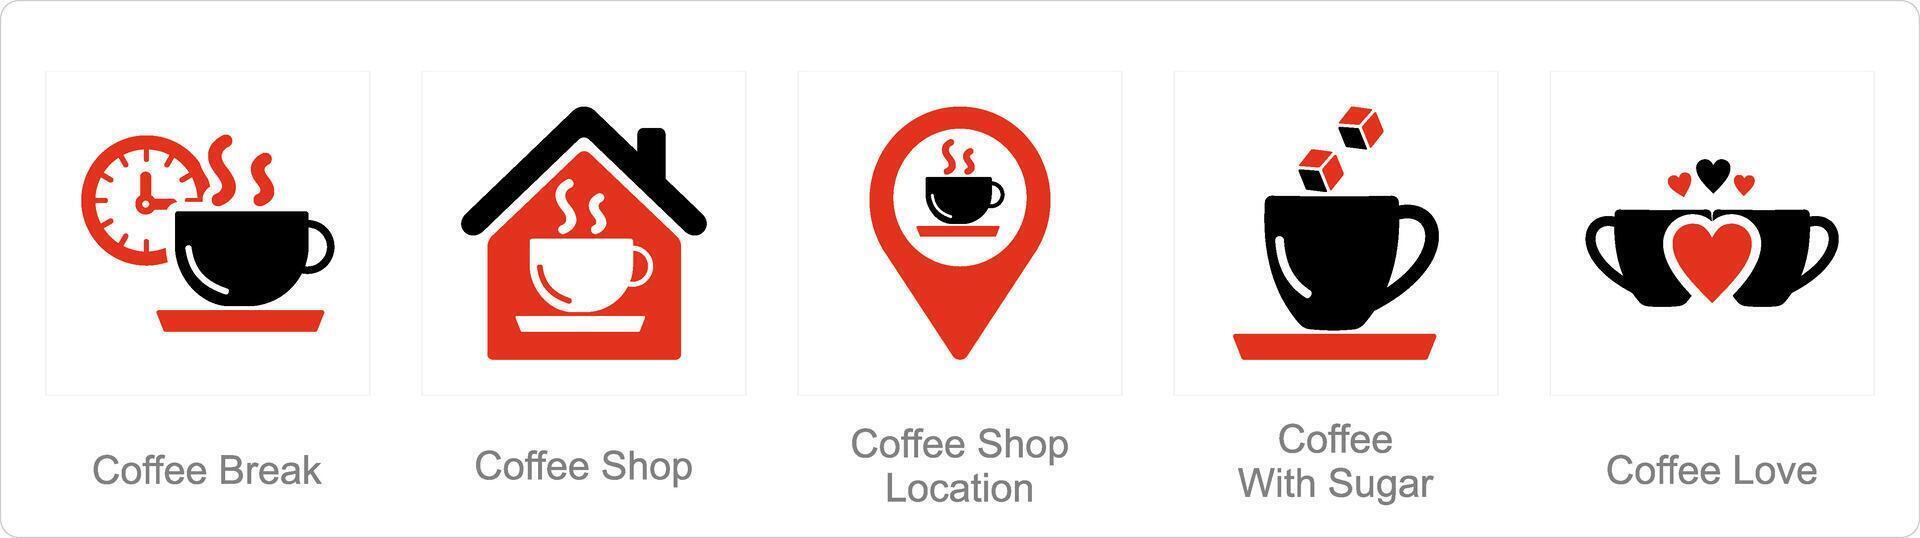 en uppsättning av 5 kaffe ikoner som kaffe ha sönder, kaffe affär, kaffe affär plats vektor